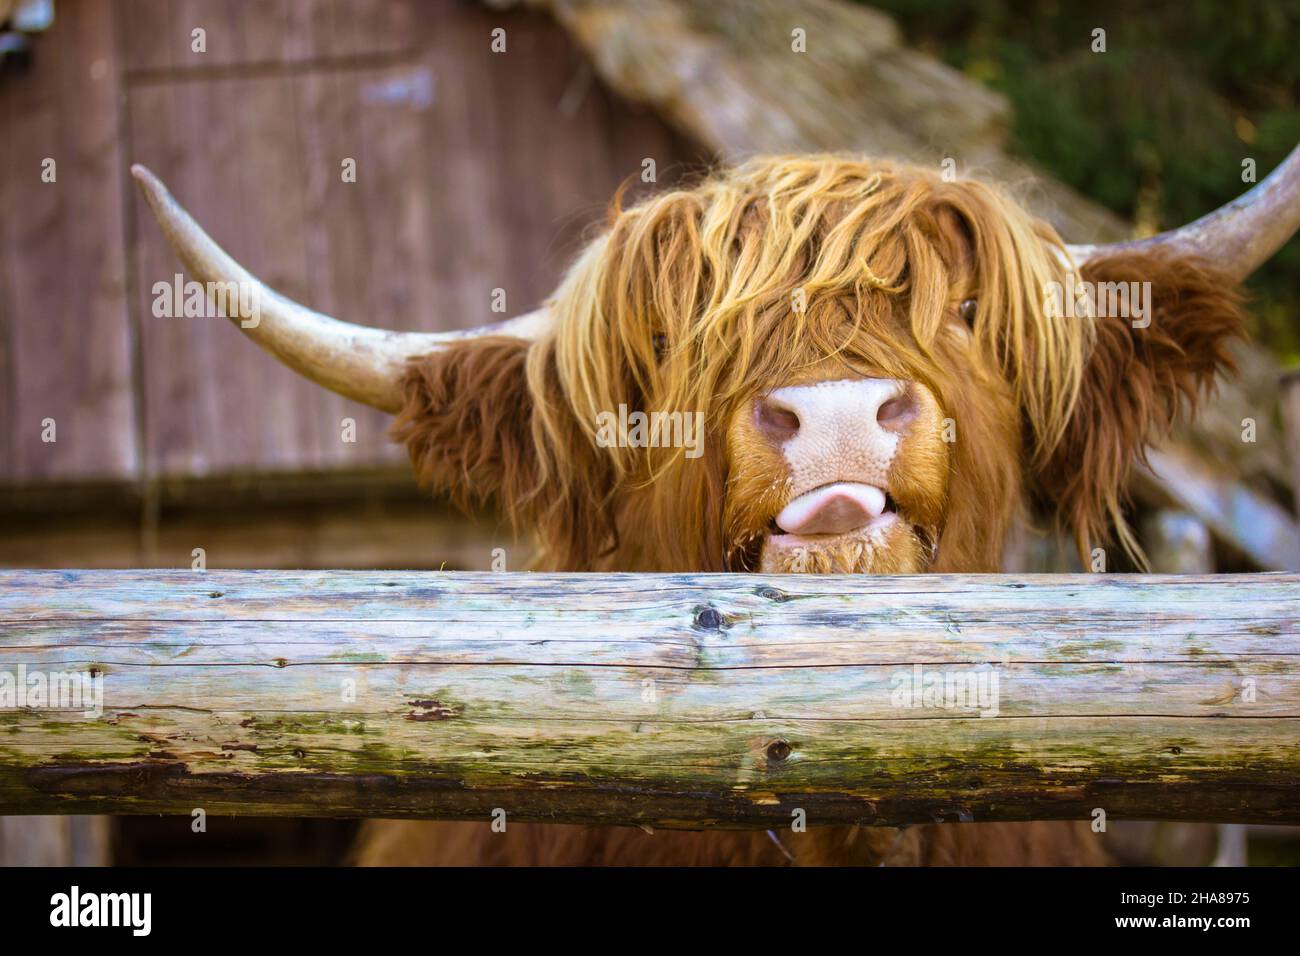 Yak scozzese peloso, corna grandi. Mucca marrone rossastra del bestiame delle Highland che mostra la lingua. Foto Stock